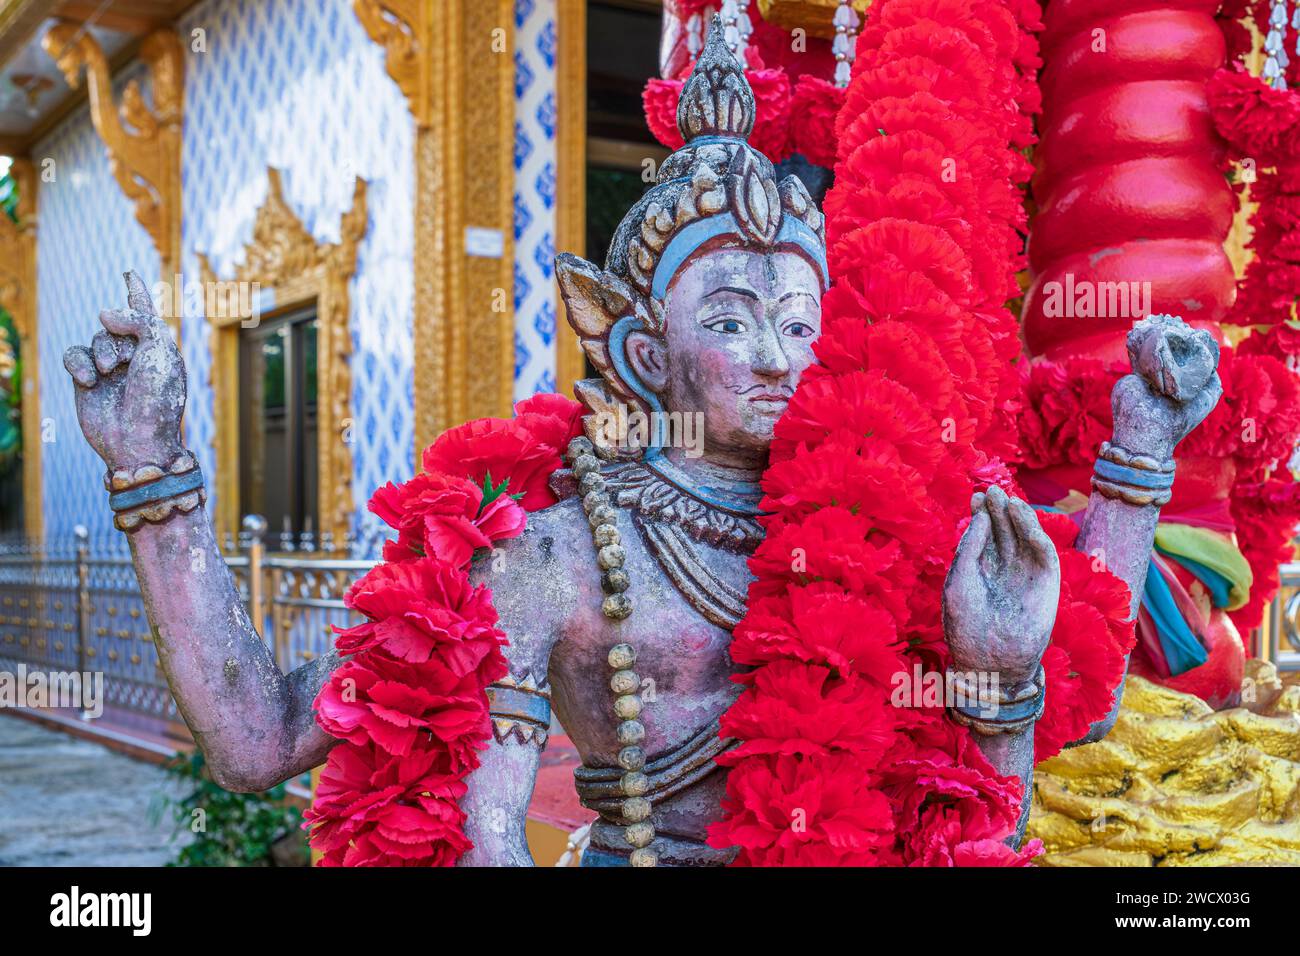 Thailand, Chanthaburi, Wat Bot Mueang buddhistischer Tempel Stockfoto